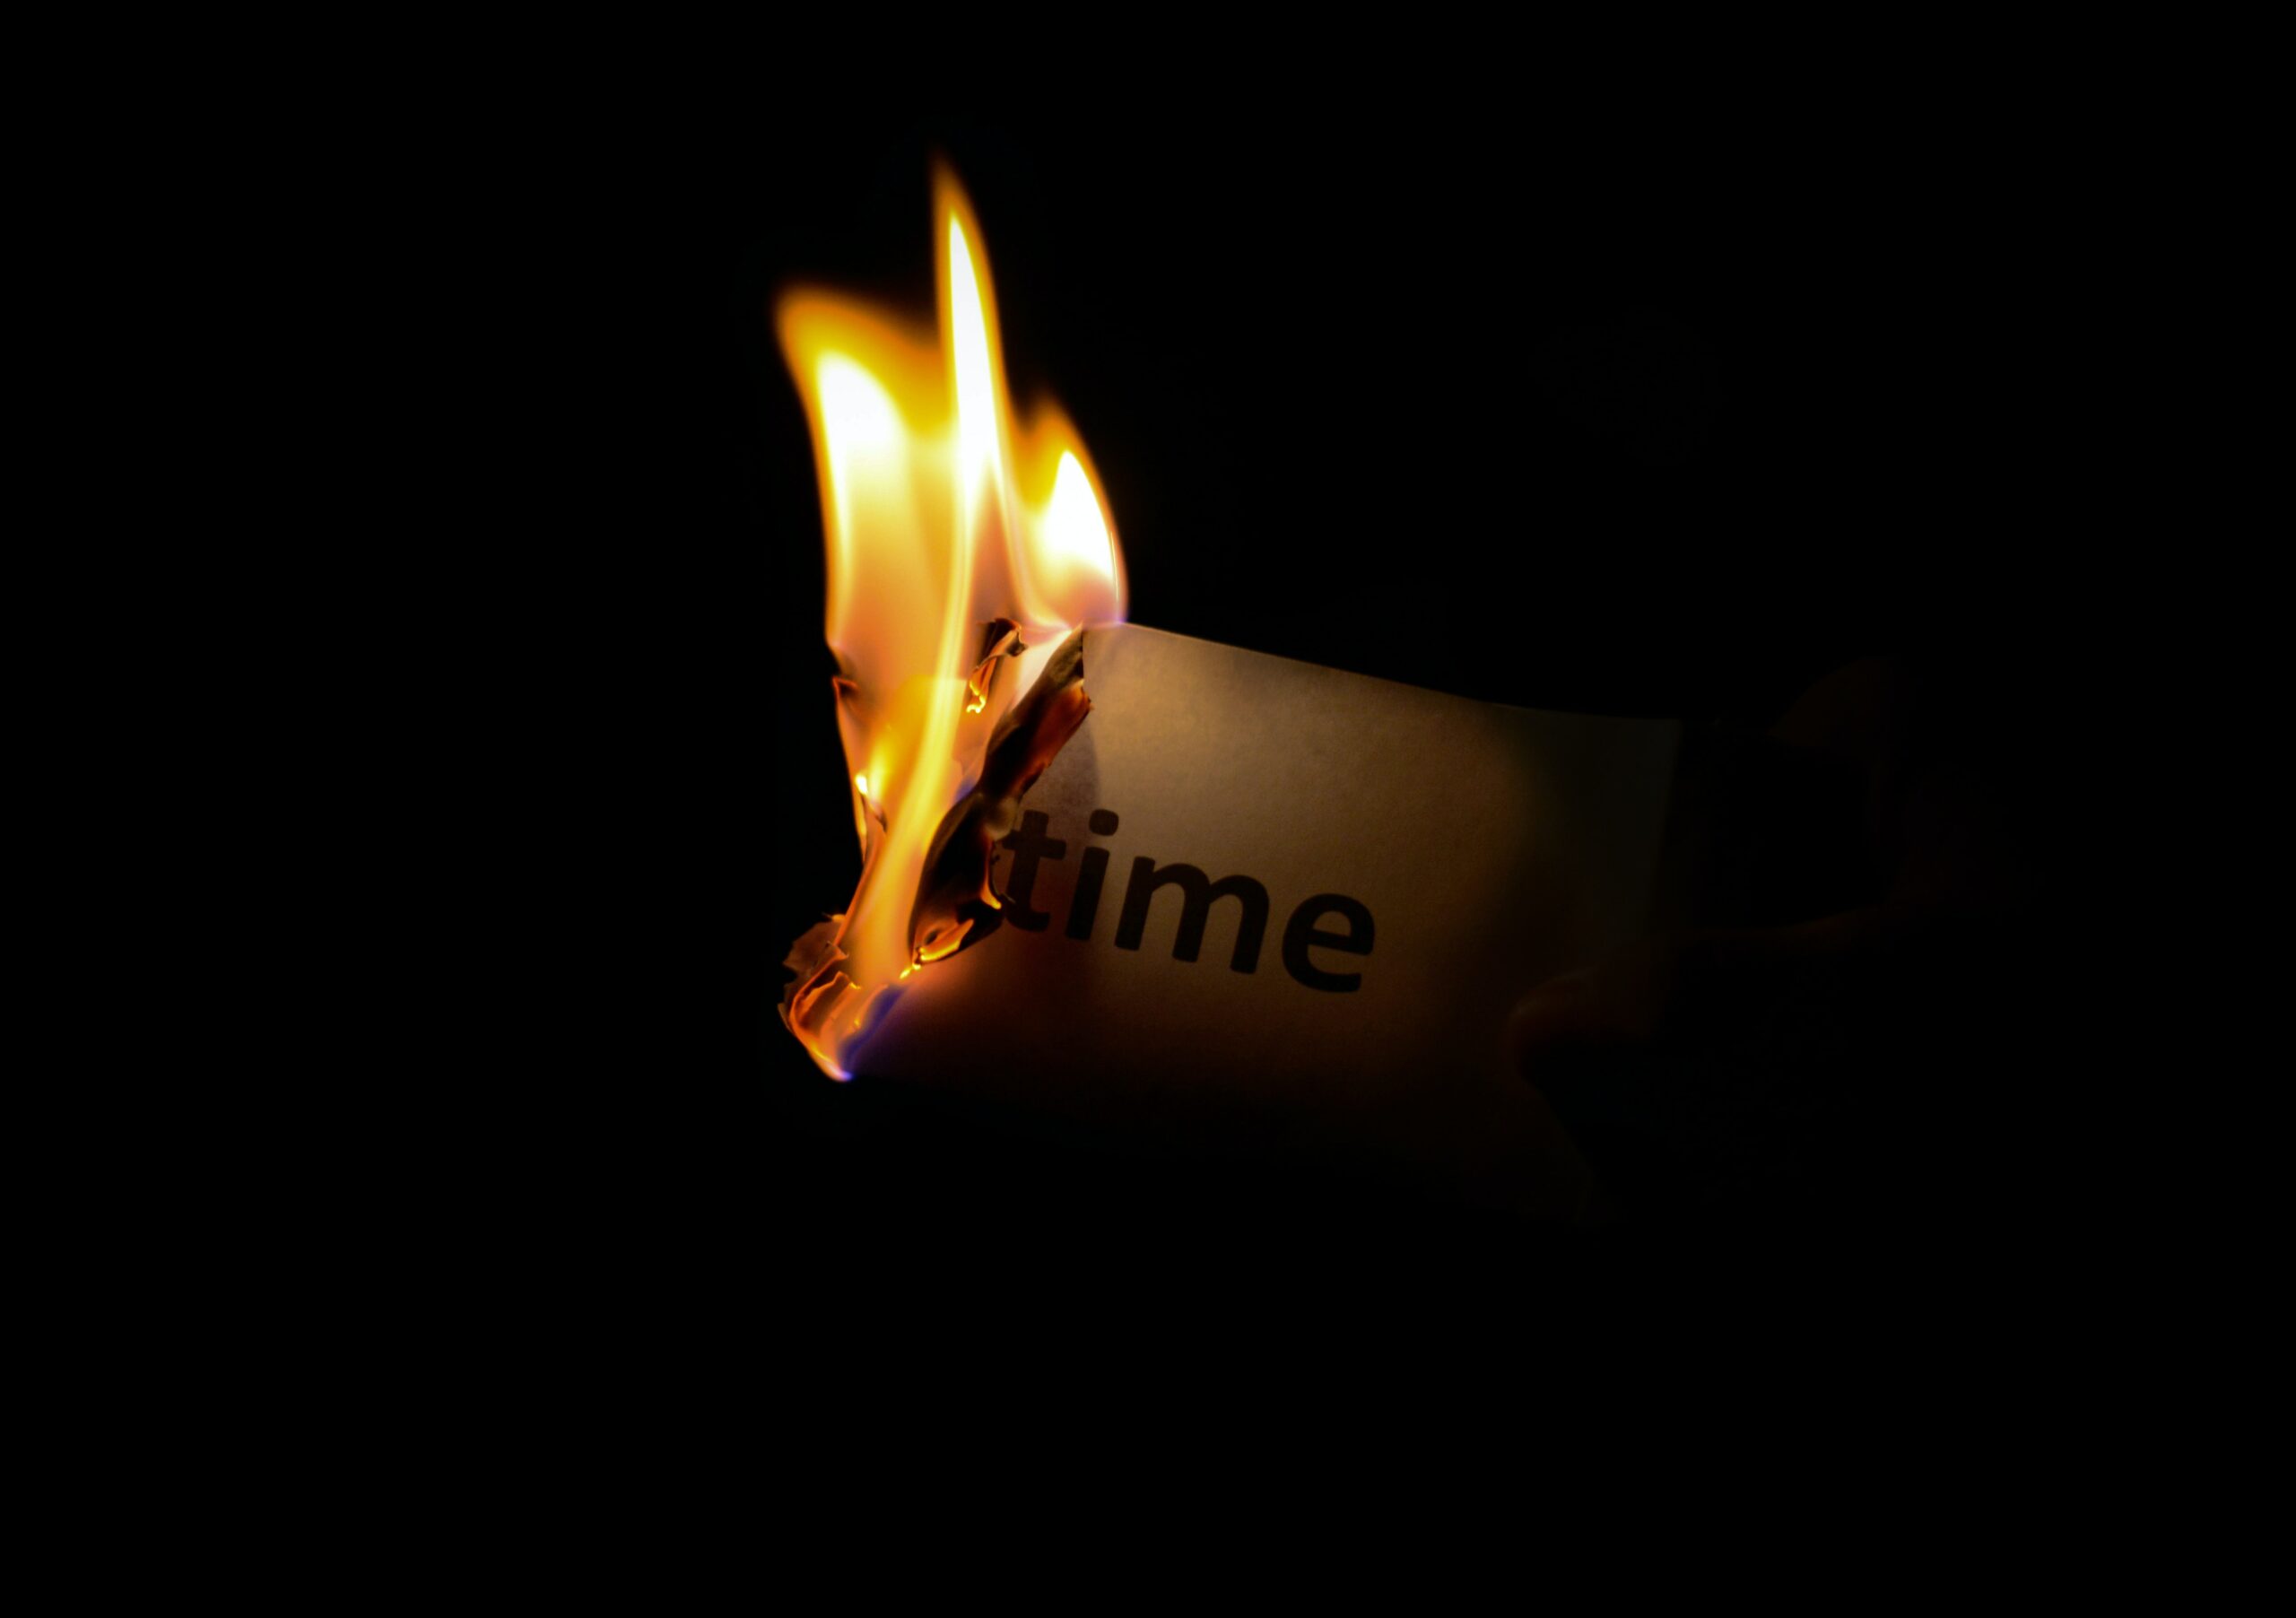 Foto de Eugene Shelestov: https://www.pexels.com/es-es/foto/persona-sosteniendo-papel-quemado-en-una-habitacion-oscura-33930/